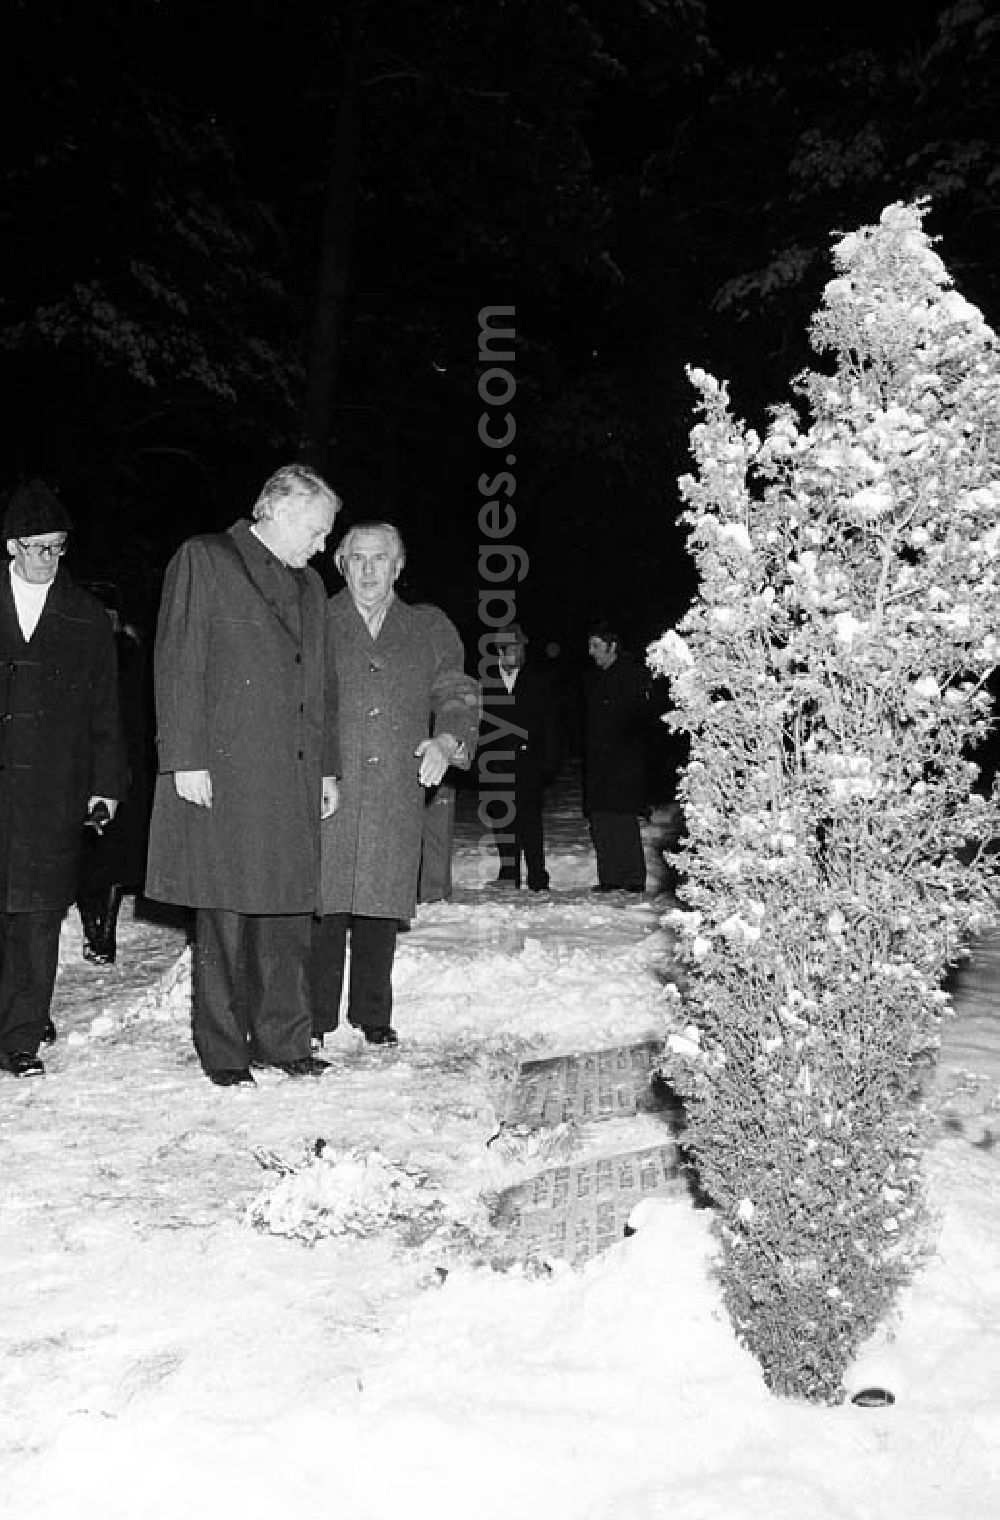 GDR image archive: Halbe / Brandenburg - 12.12.1981 Kranzniederlegung in Halbe (Brandenburg) durch Erich Honecker und Helmut Schmidt Umschlagnr.: 1